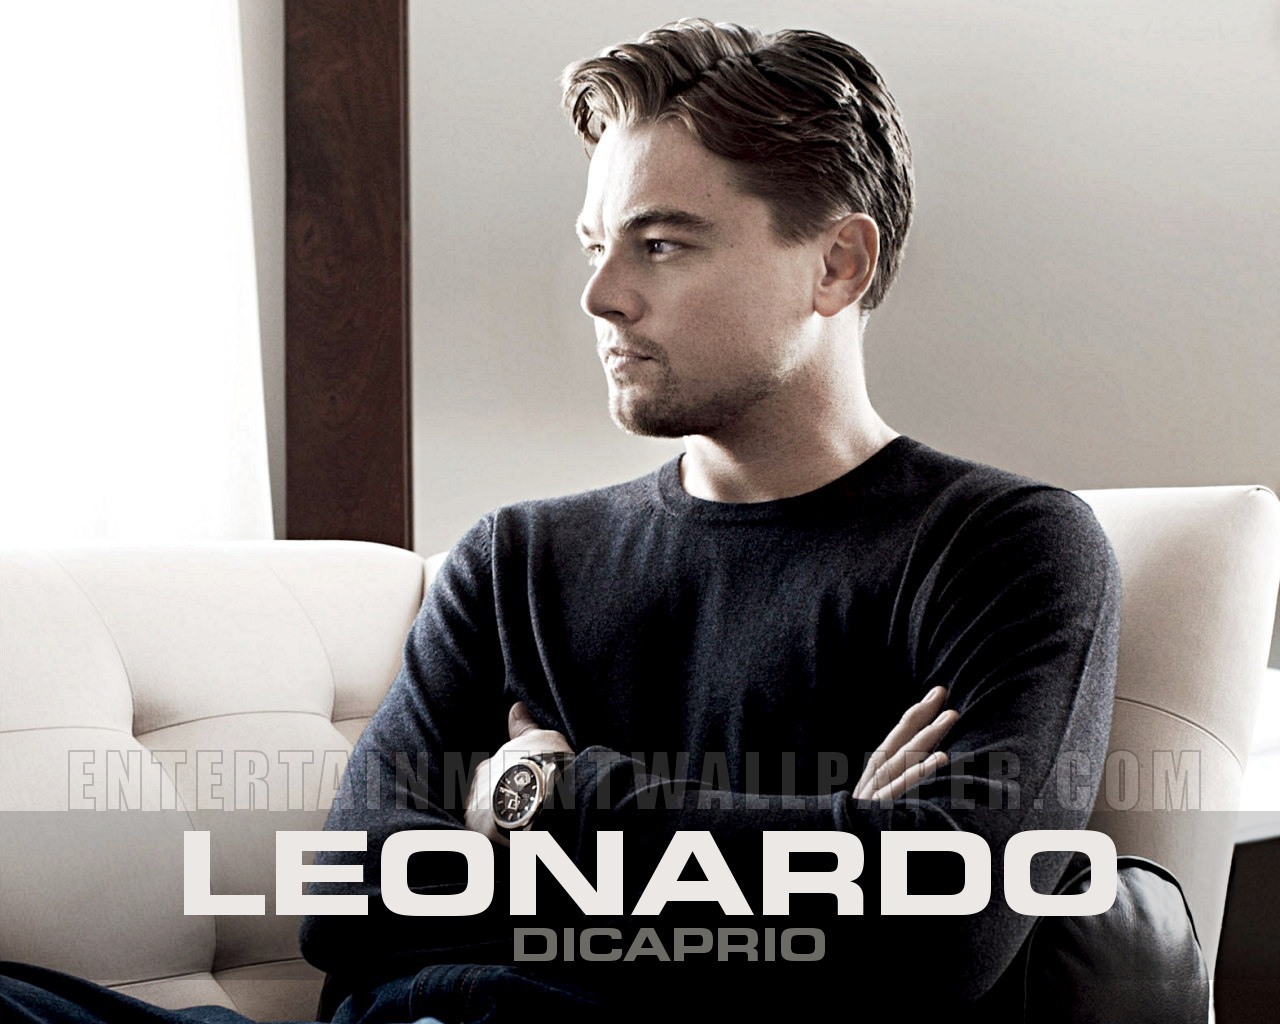 Leonardo Dicaprio - Images